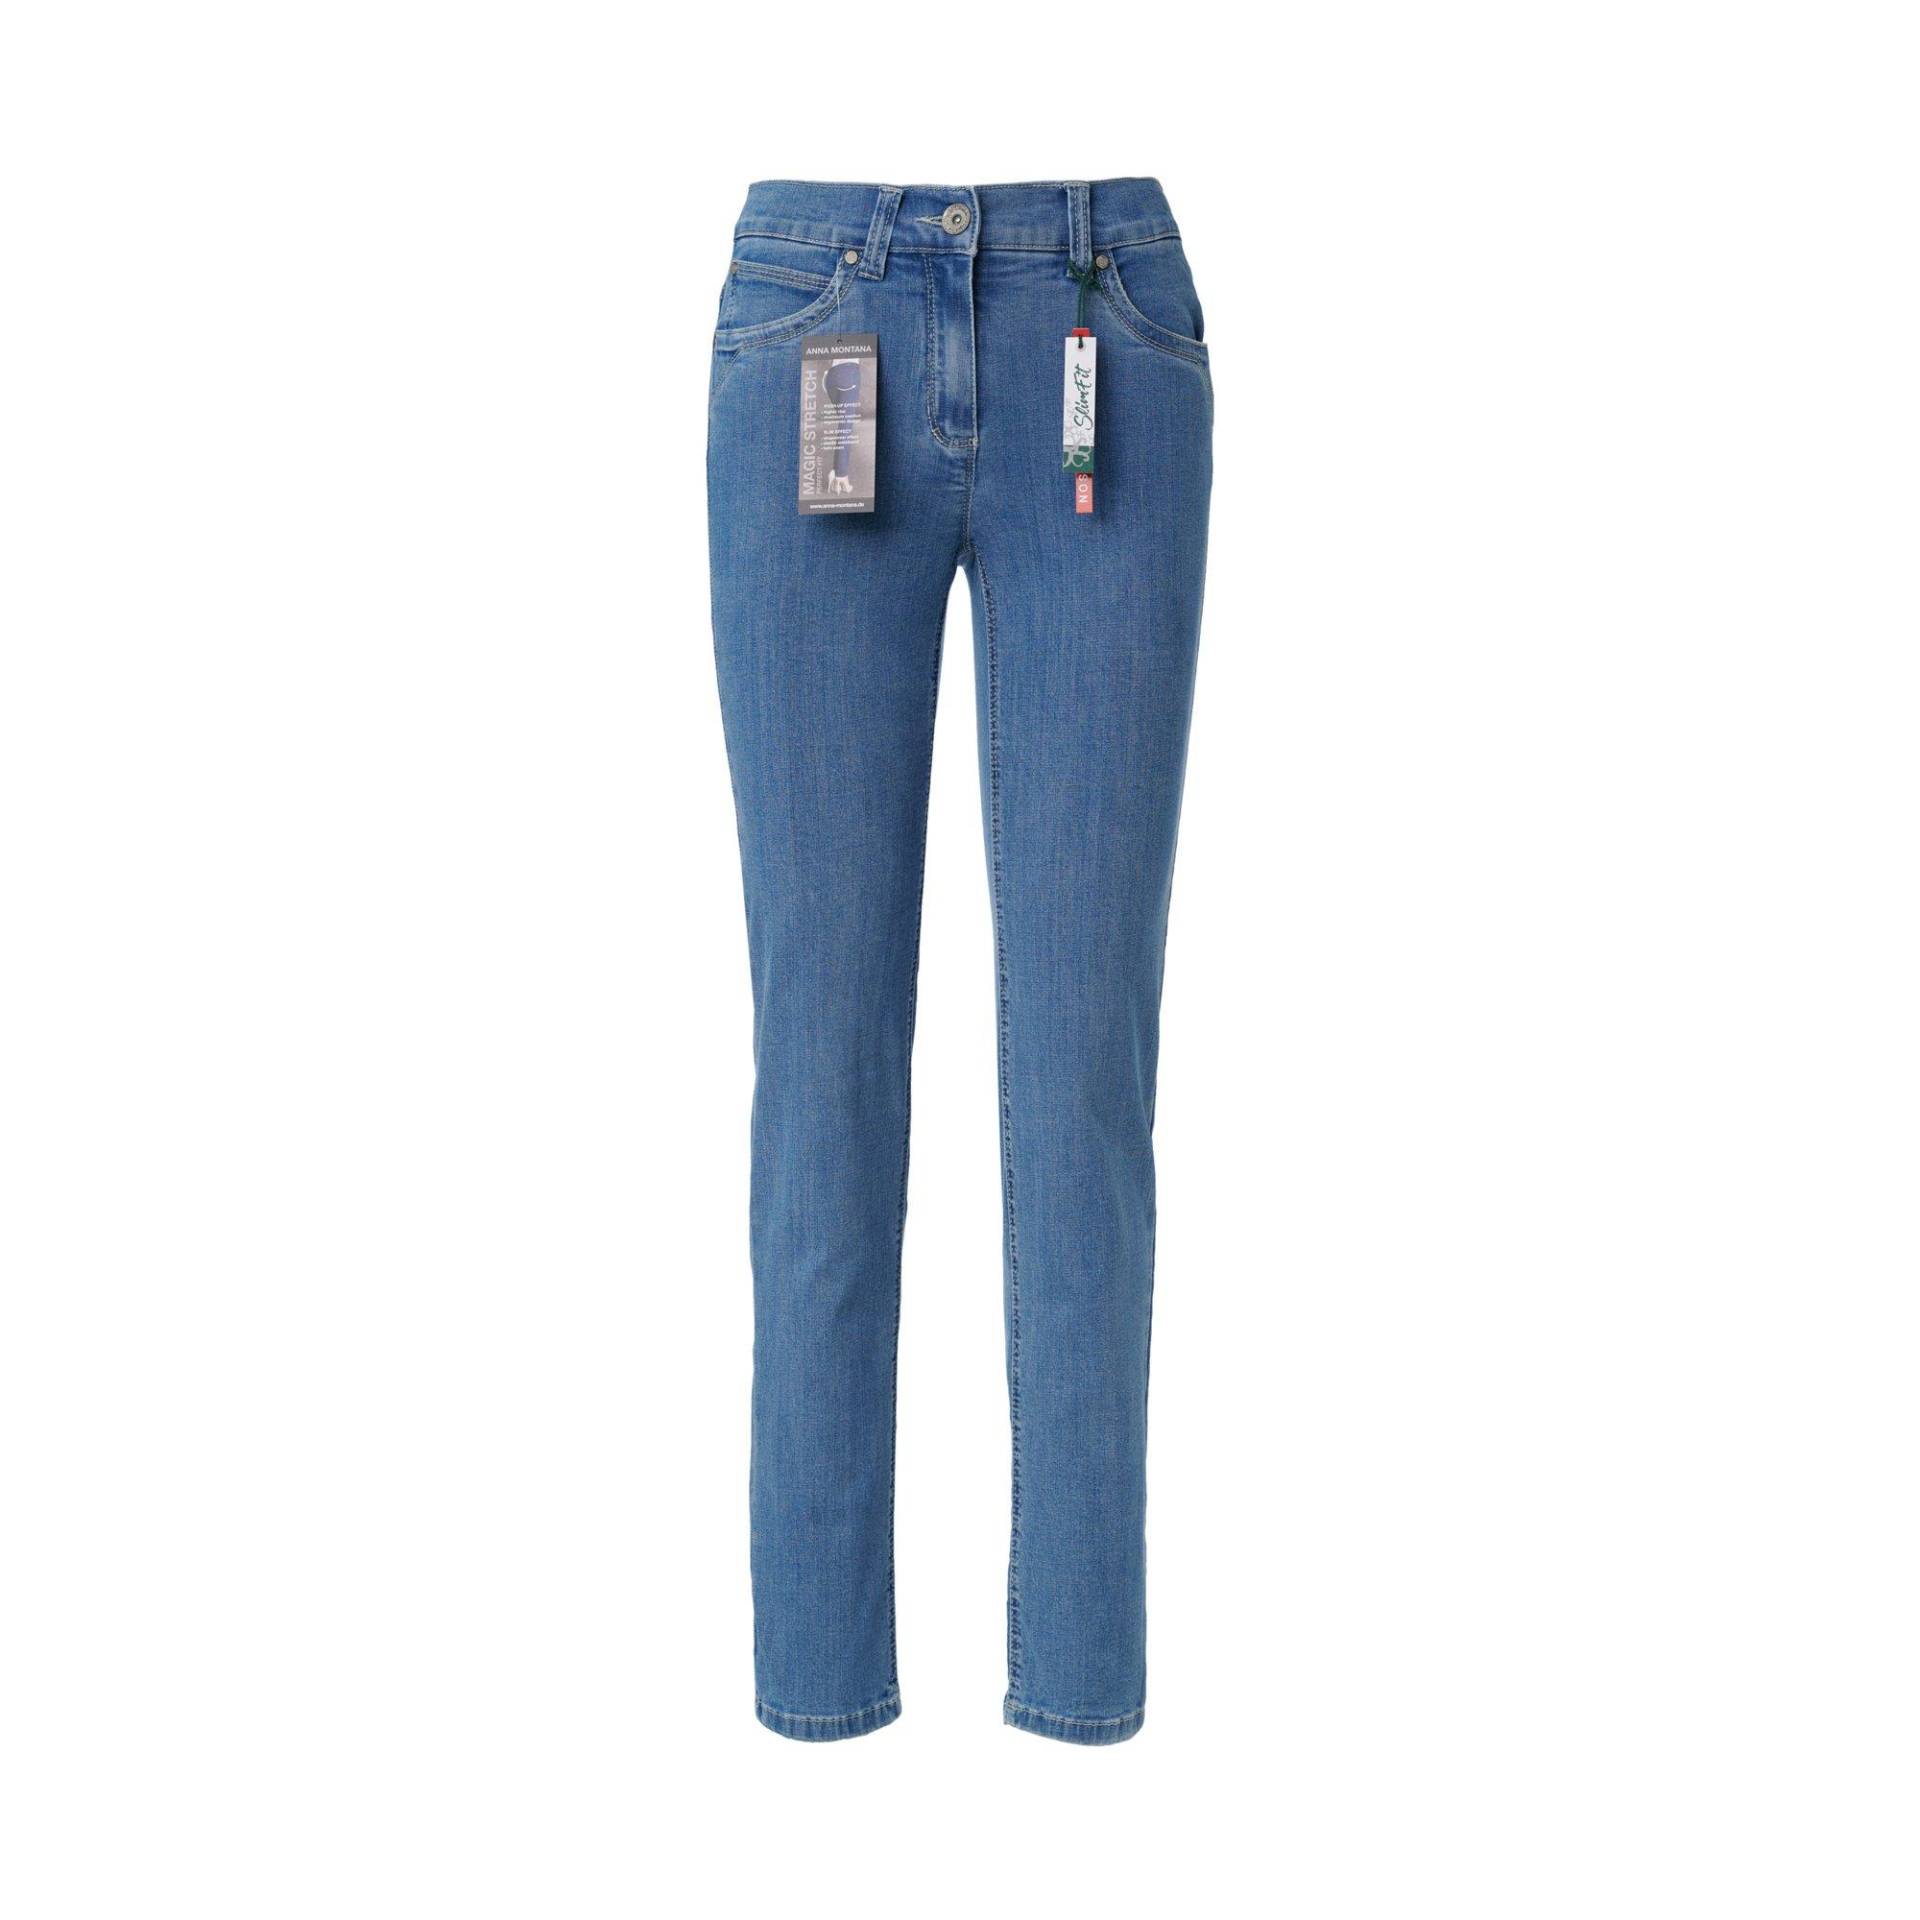 Jeans, Slim Fit Damen Bleached Blau 36 von ANNA MONTANA